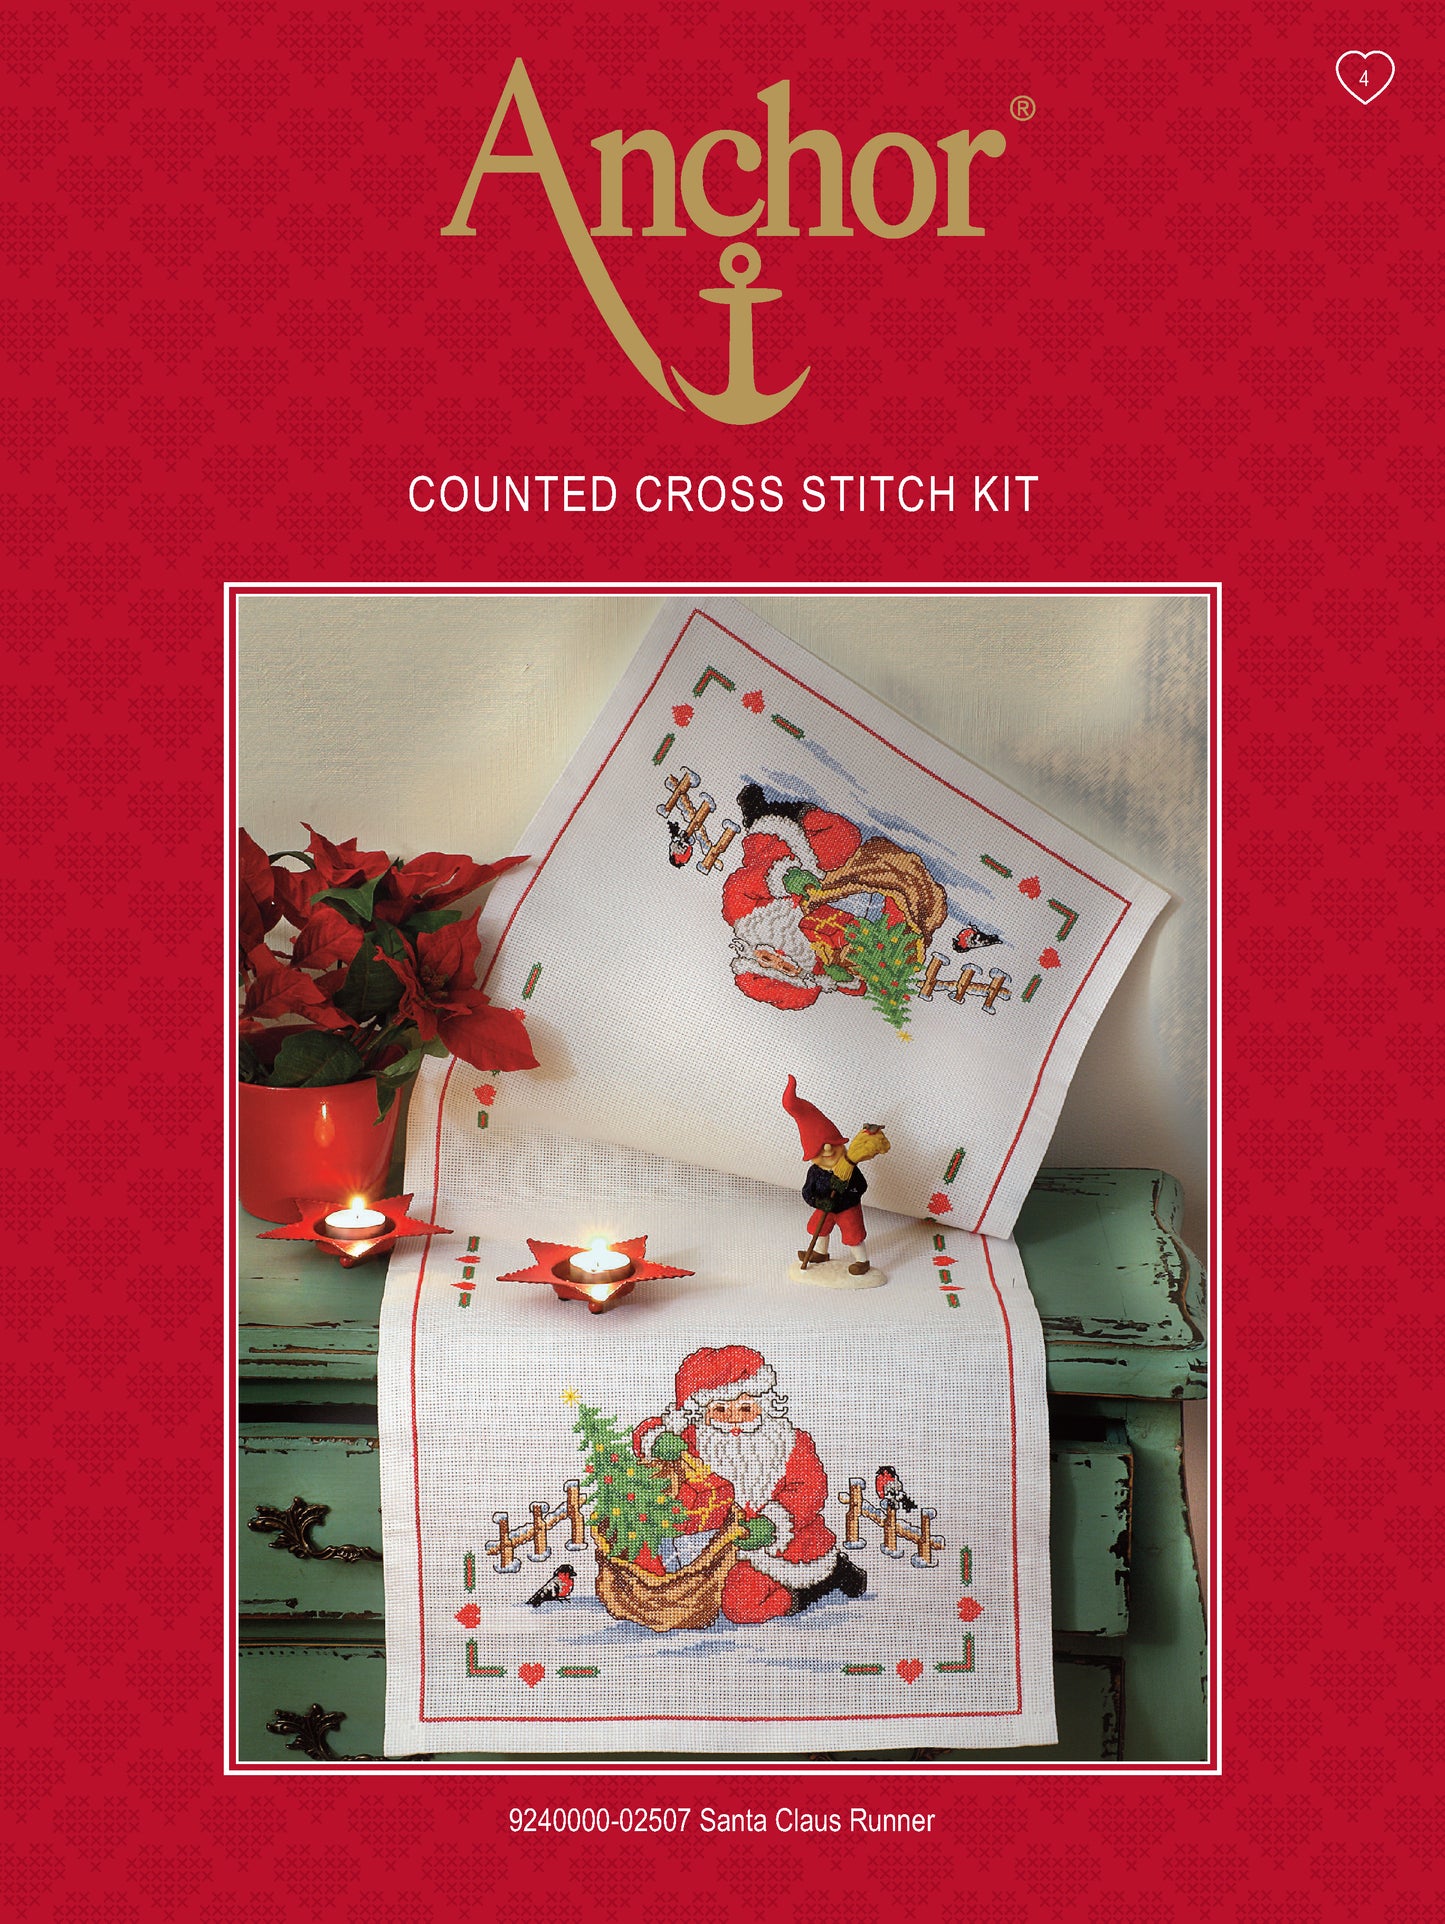 Información Kit de Punto de Cruz de Navidad de Camino de Mesa / Mantel Navideño de Santa llevando los regalos de Anchor